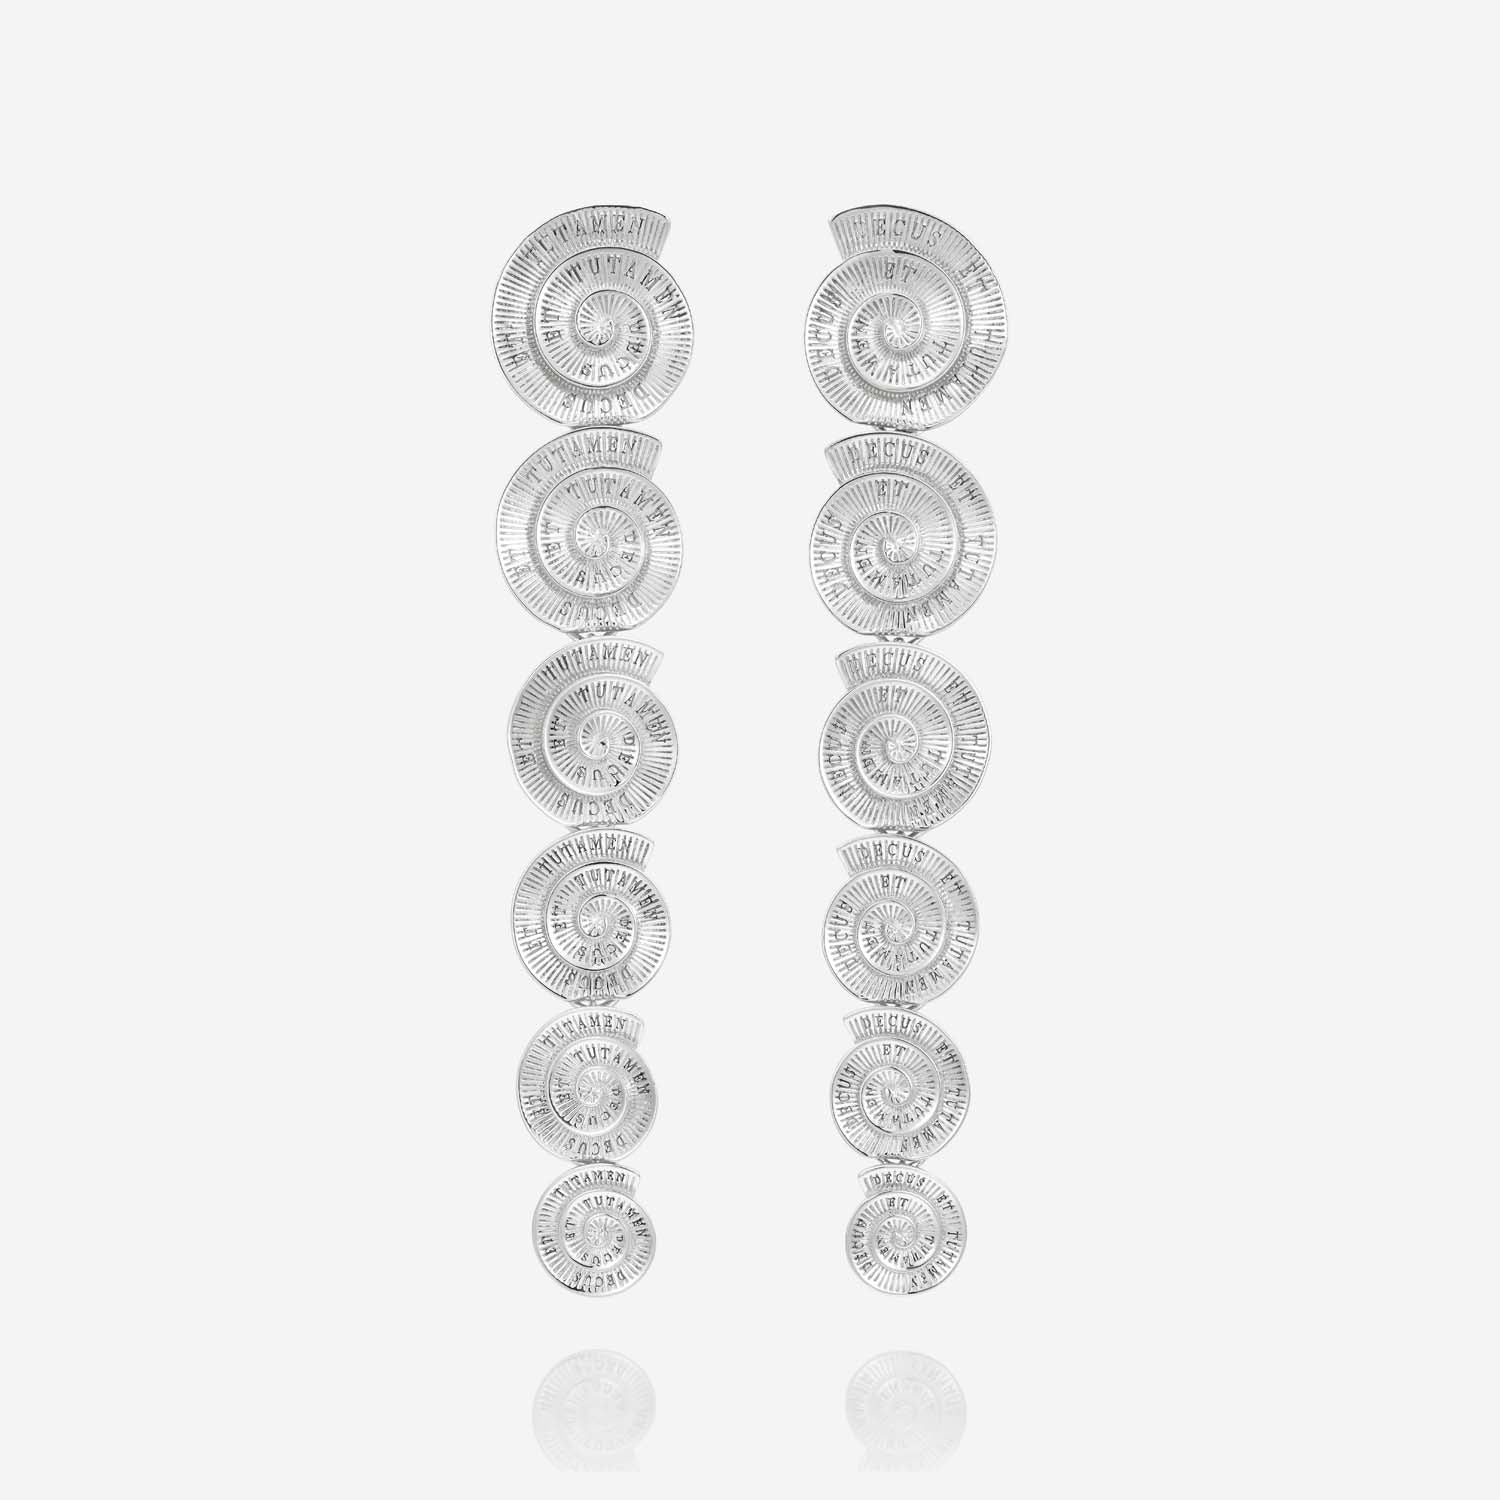 886 Royal Mint Earrings Tutamen Spiral Drop Earrings Silver